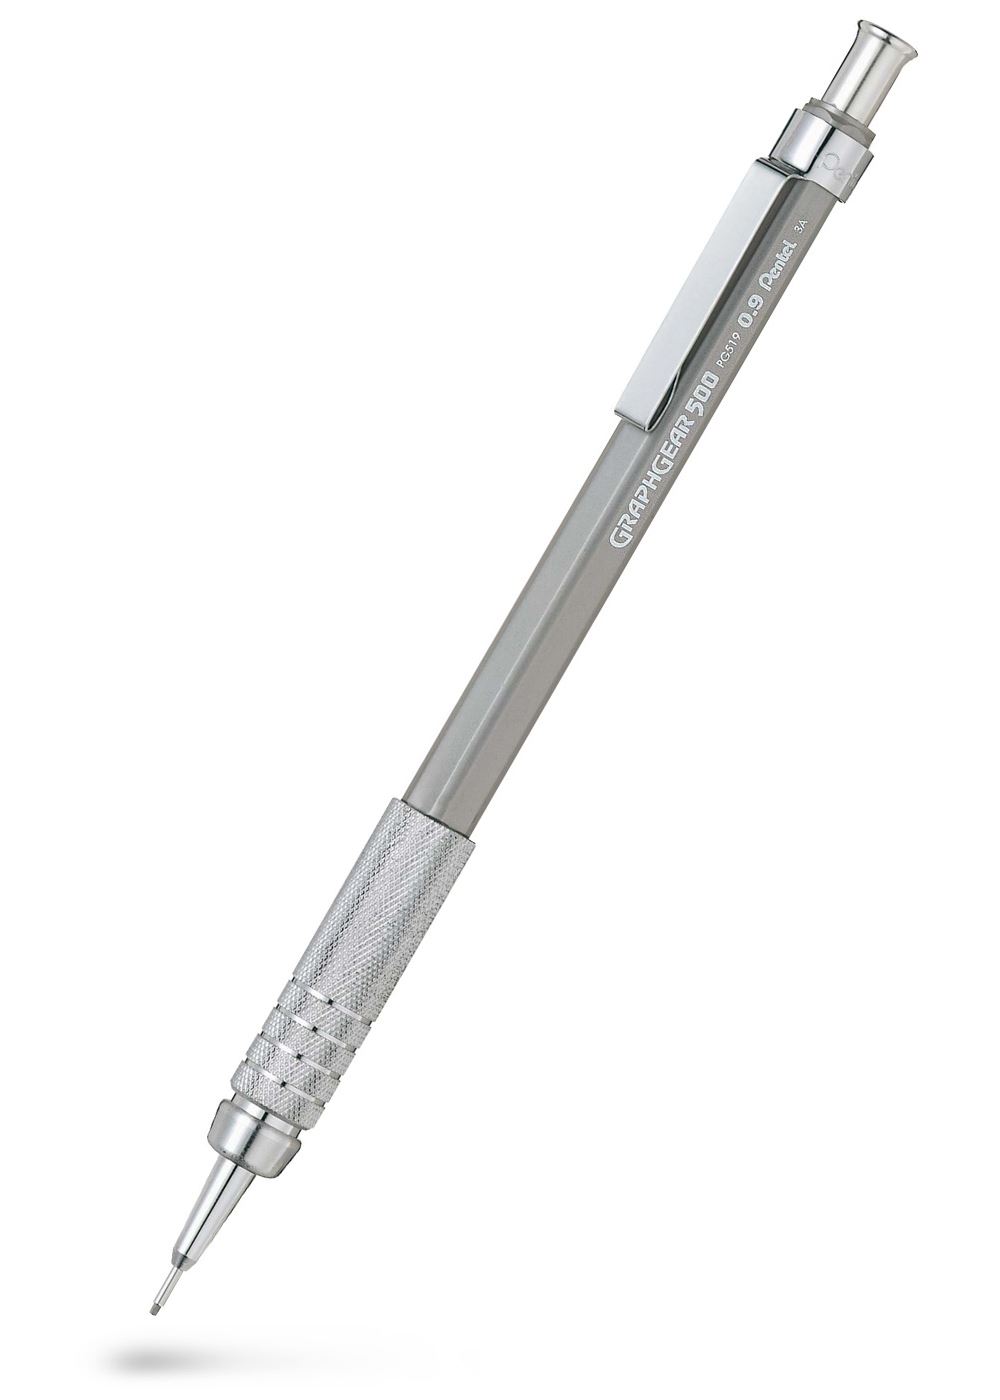 Pentel Graphgear 500 Mechanical Pencil 0.9 mm